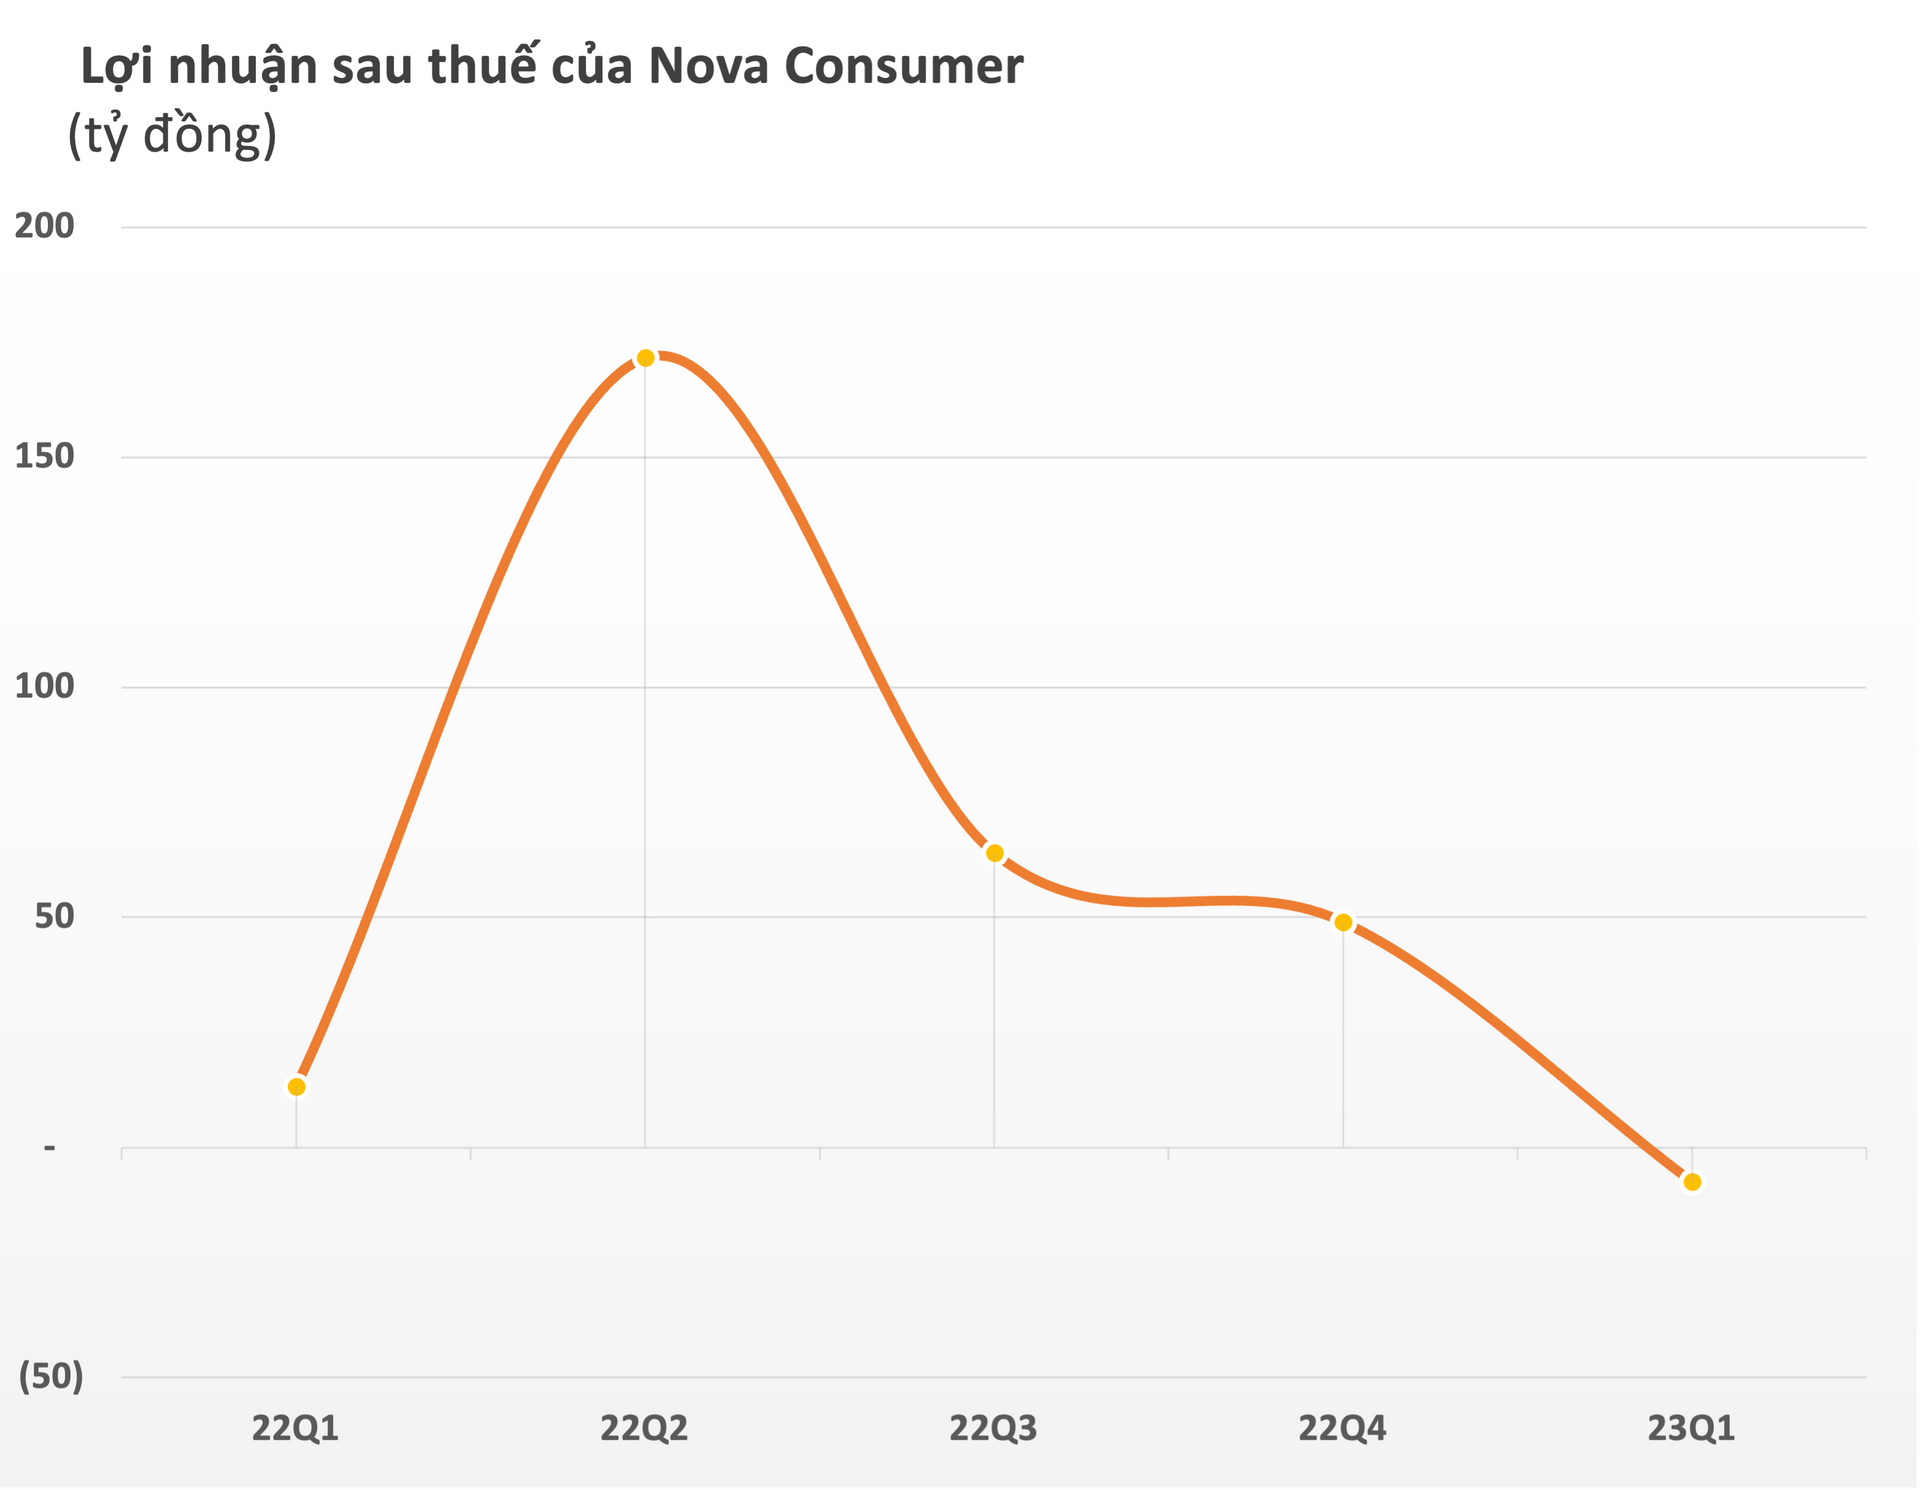 Nova Consumer (NCG) lần đầu báo lỗ kể từ sau IPO - Ảnh 2.